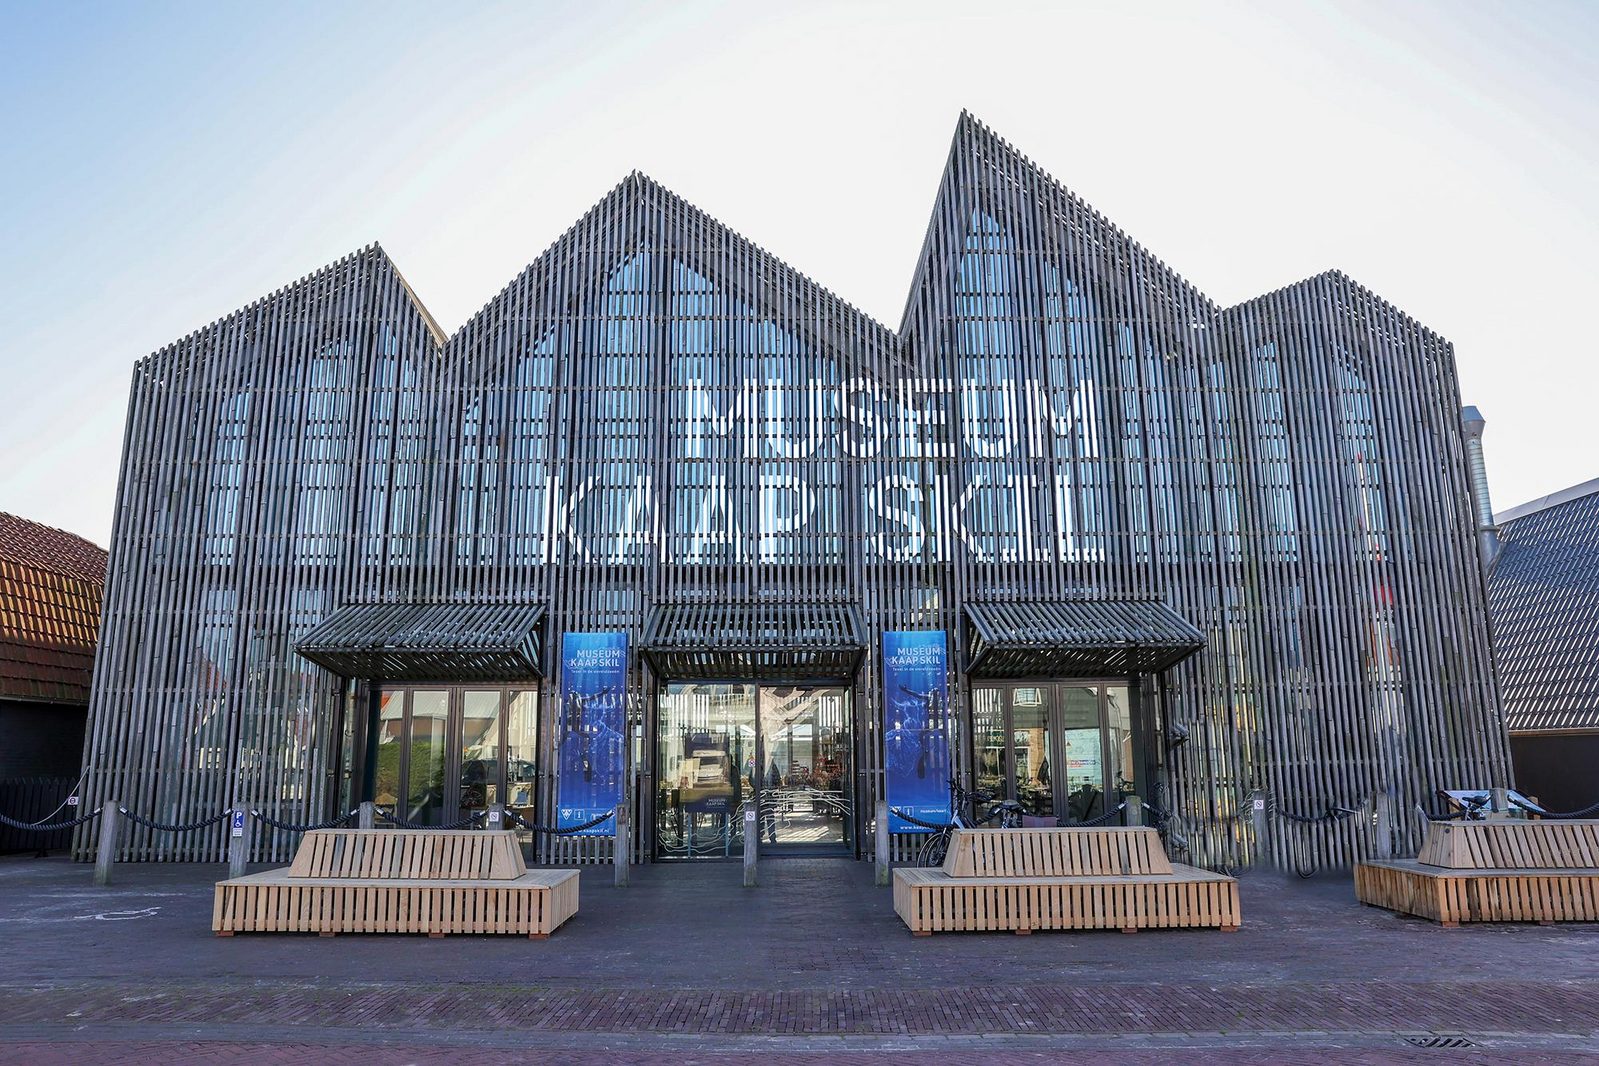 Kaapskil Museum